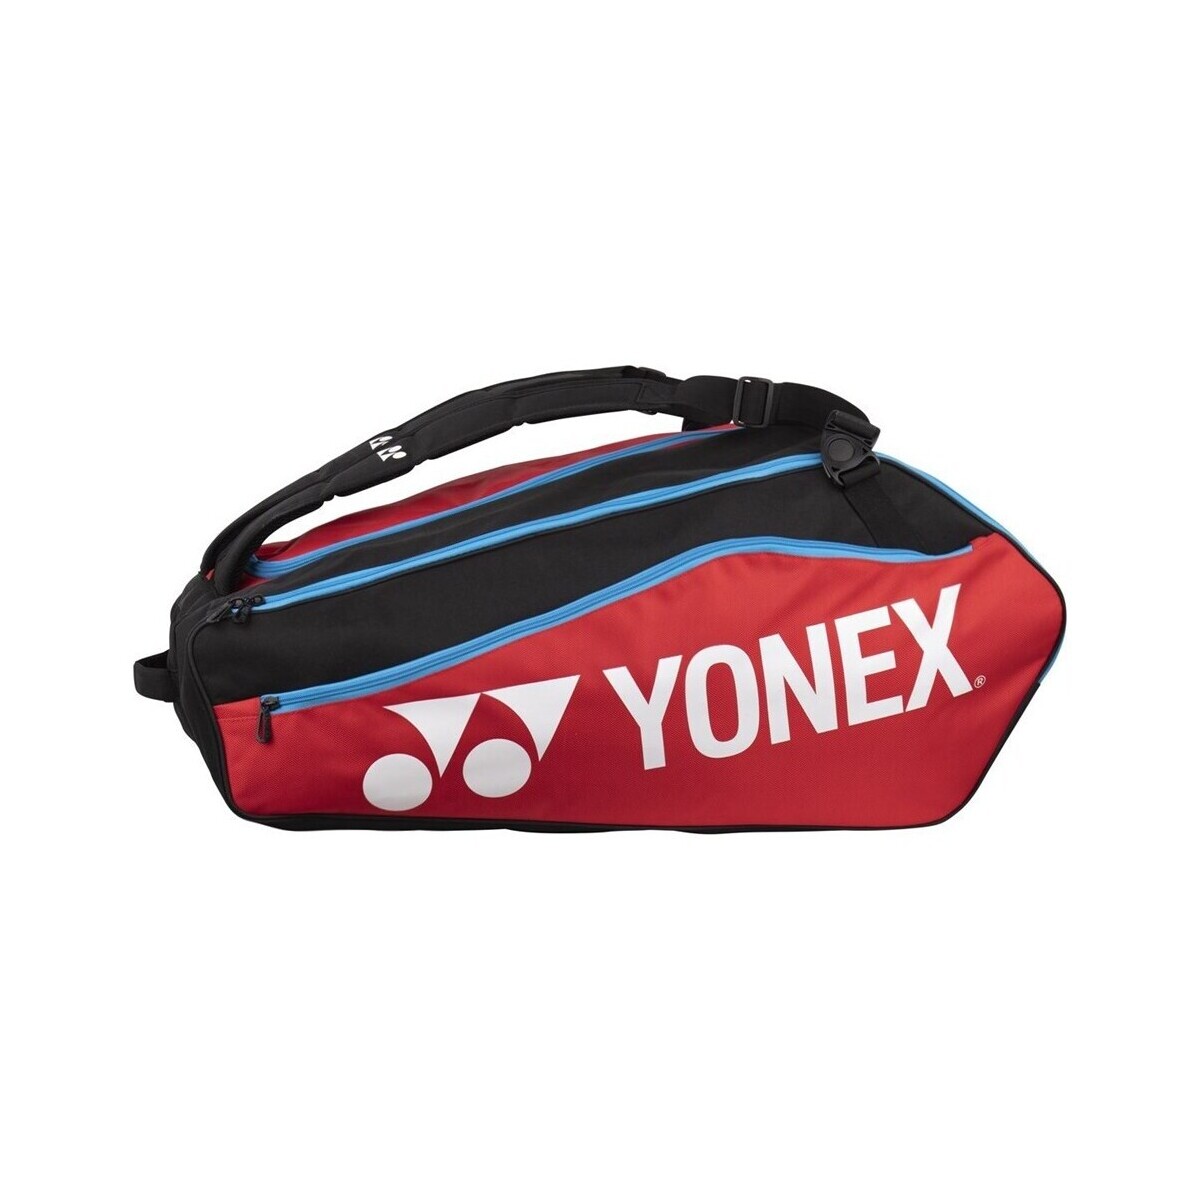 Bags Bag Yonex Thermobag 1222 Club Racket Black, Red